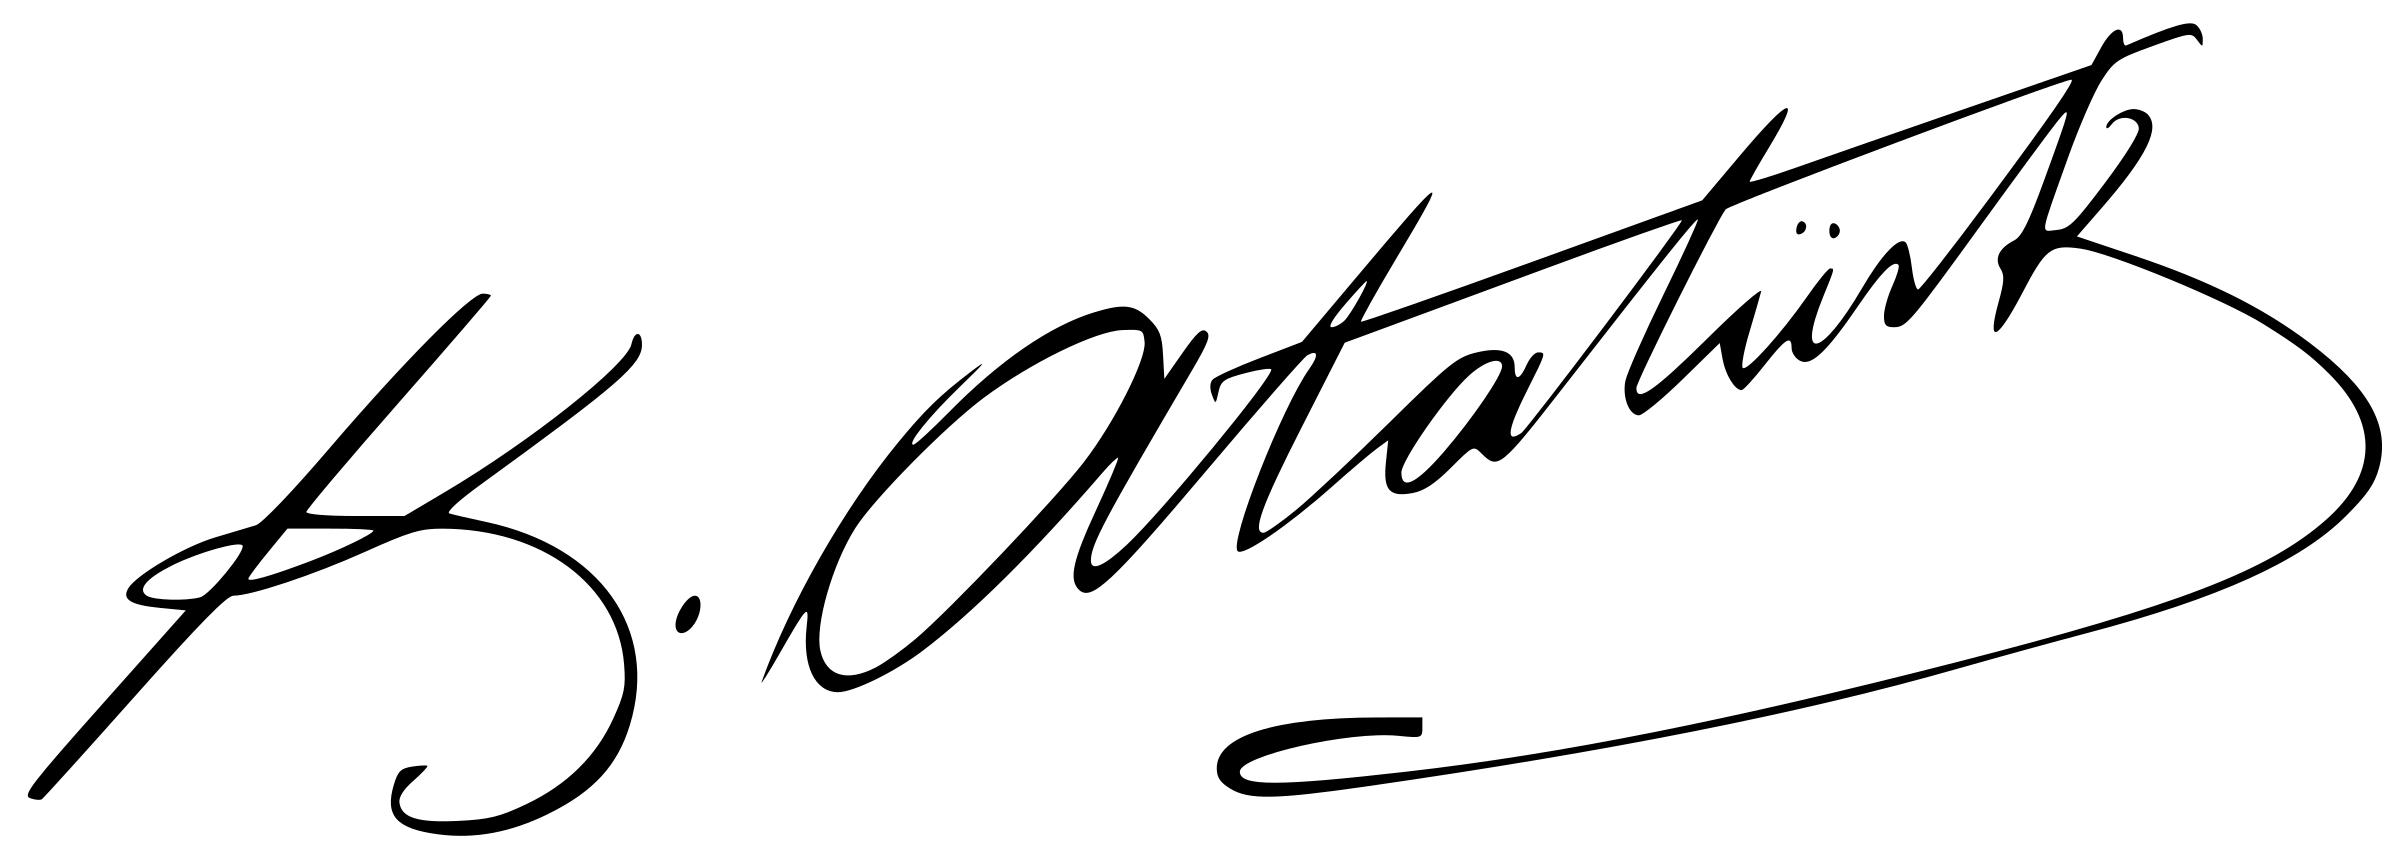 Ataturk signature png